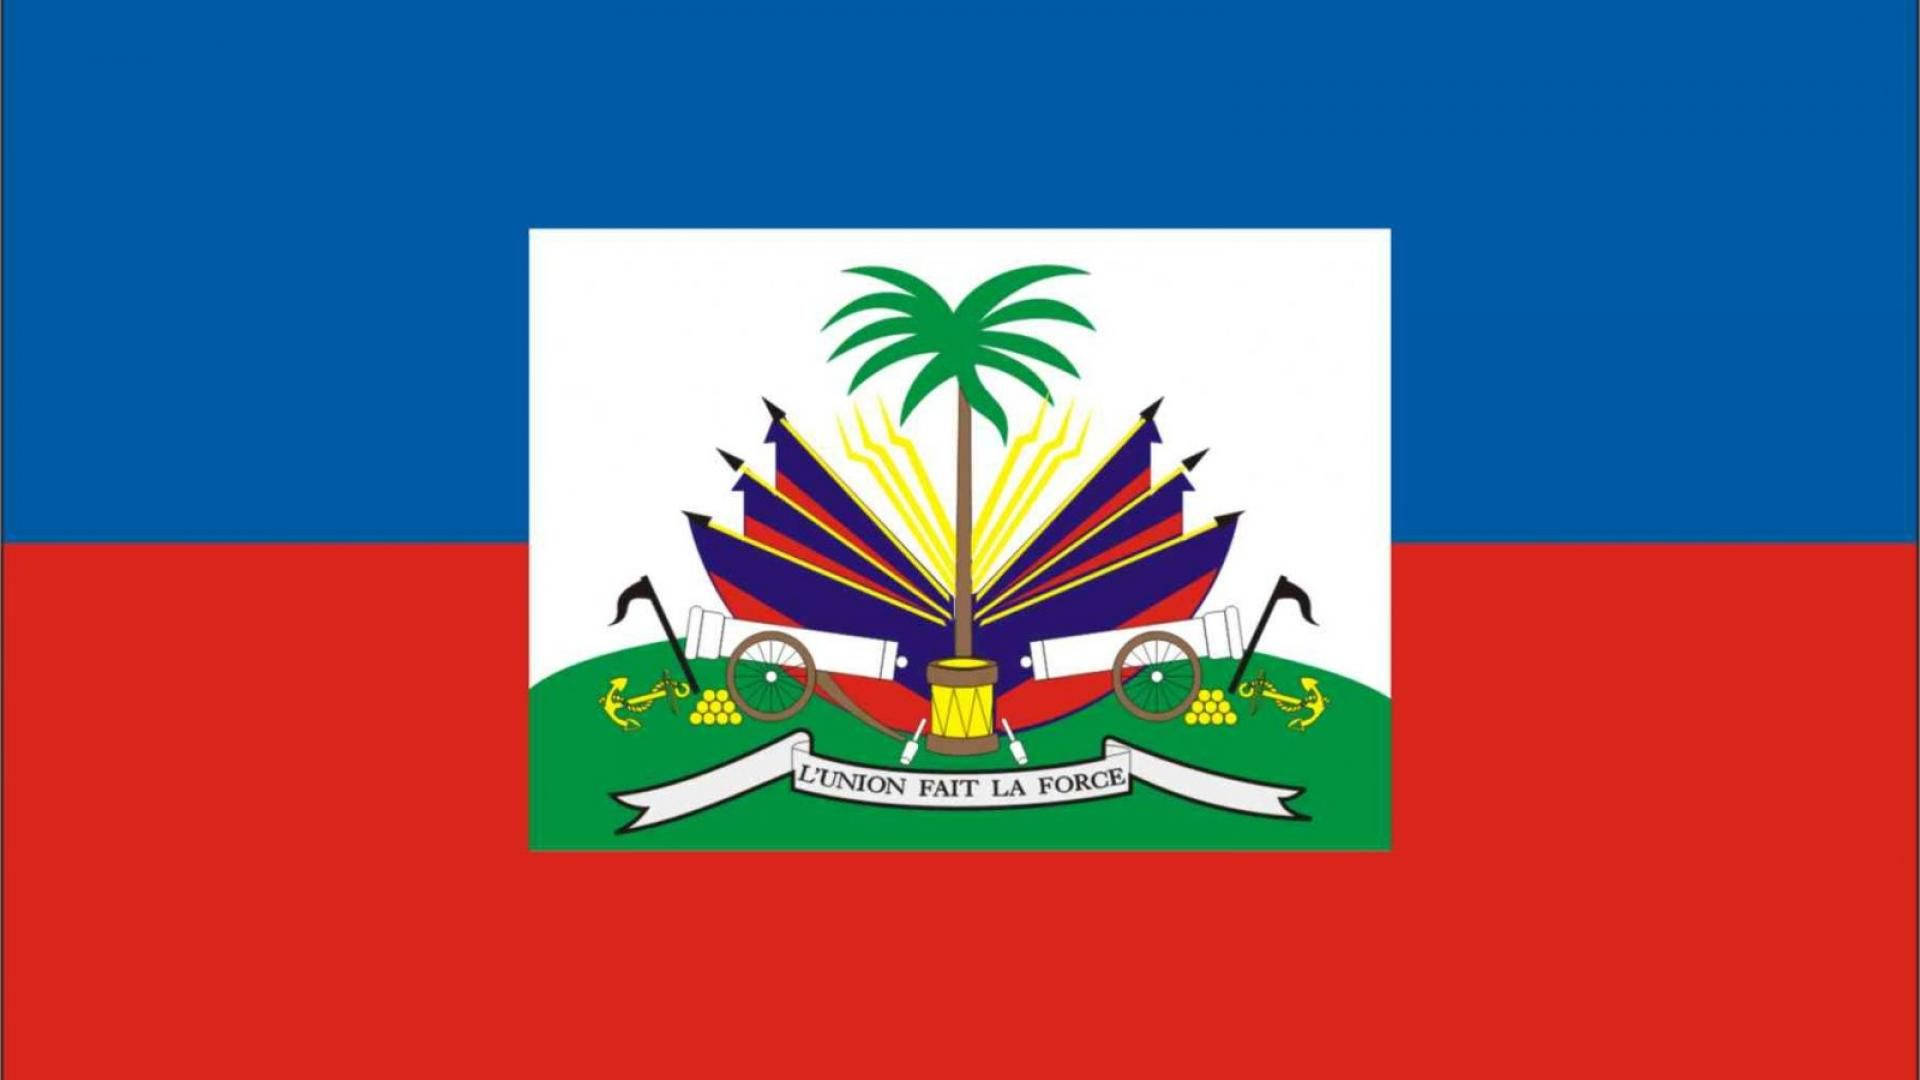 Haiti National Flag Background